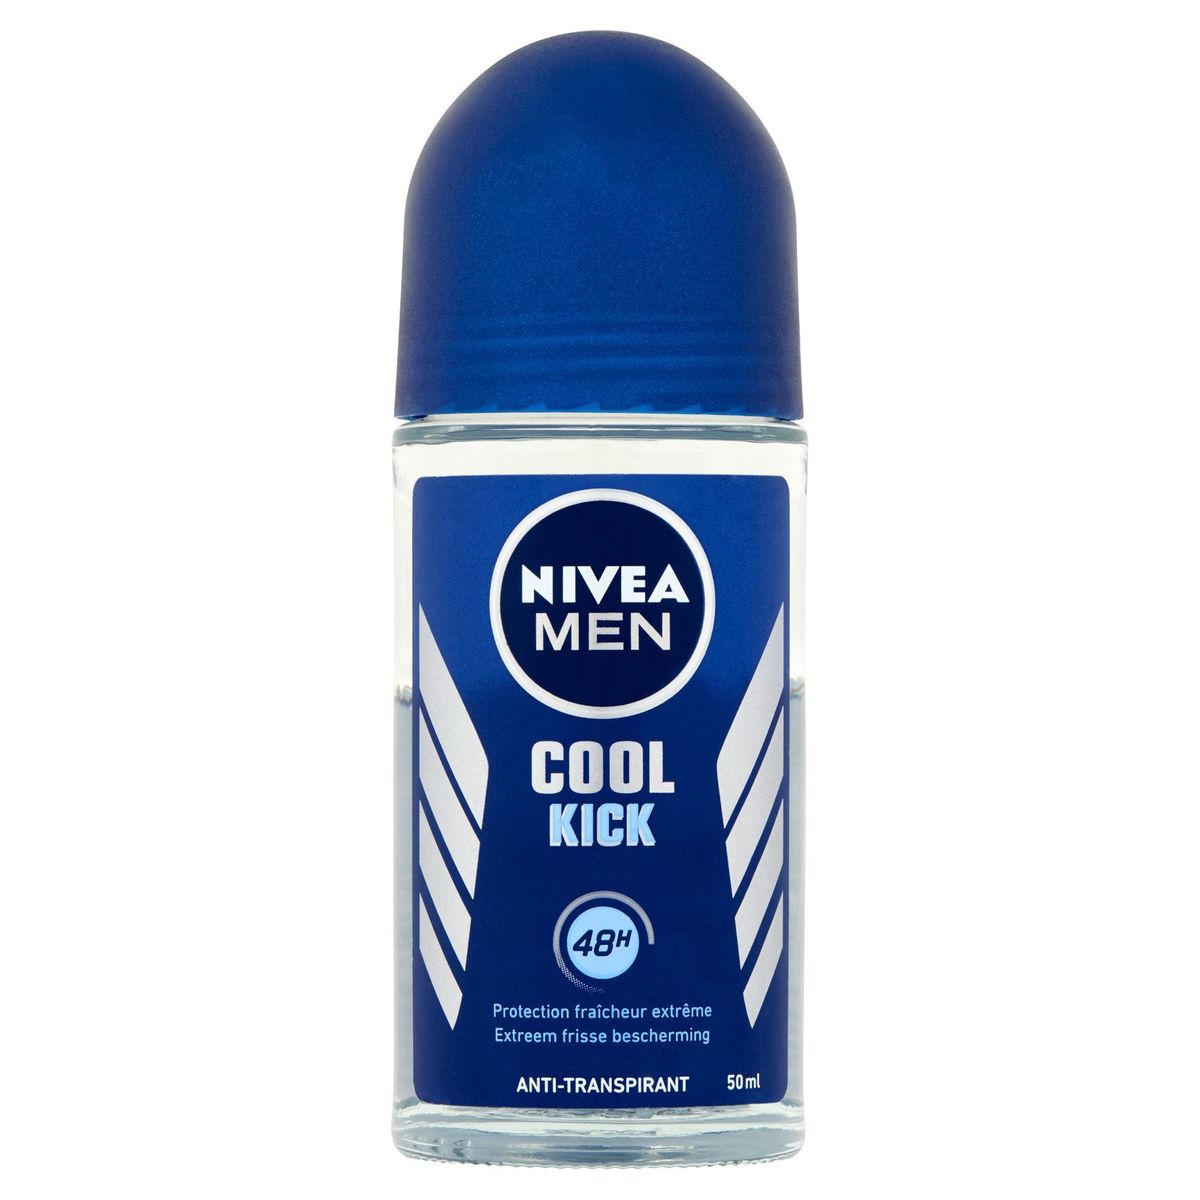 Nivea Men Cool Kick 48H Anti-Transpirant 50 ml